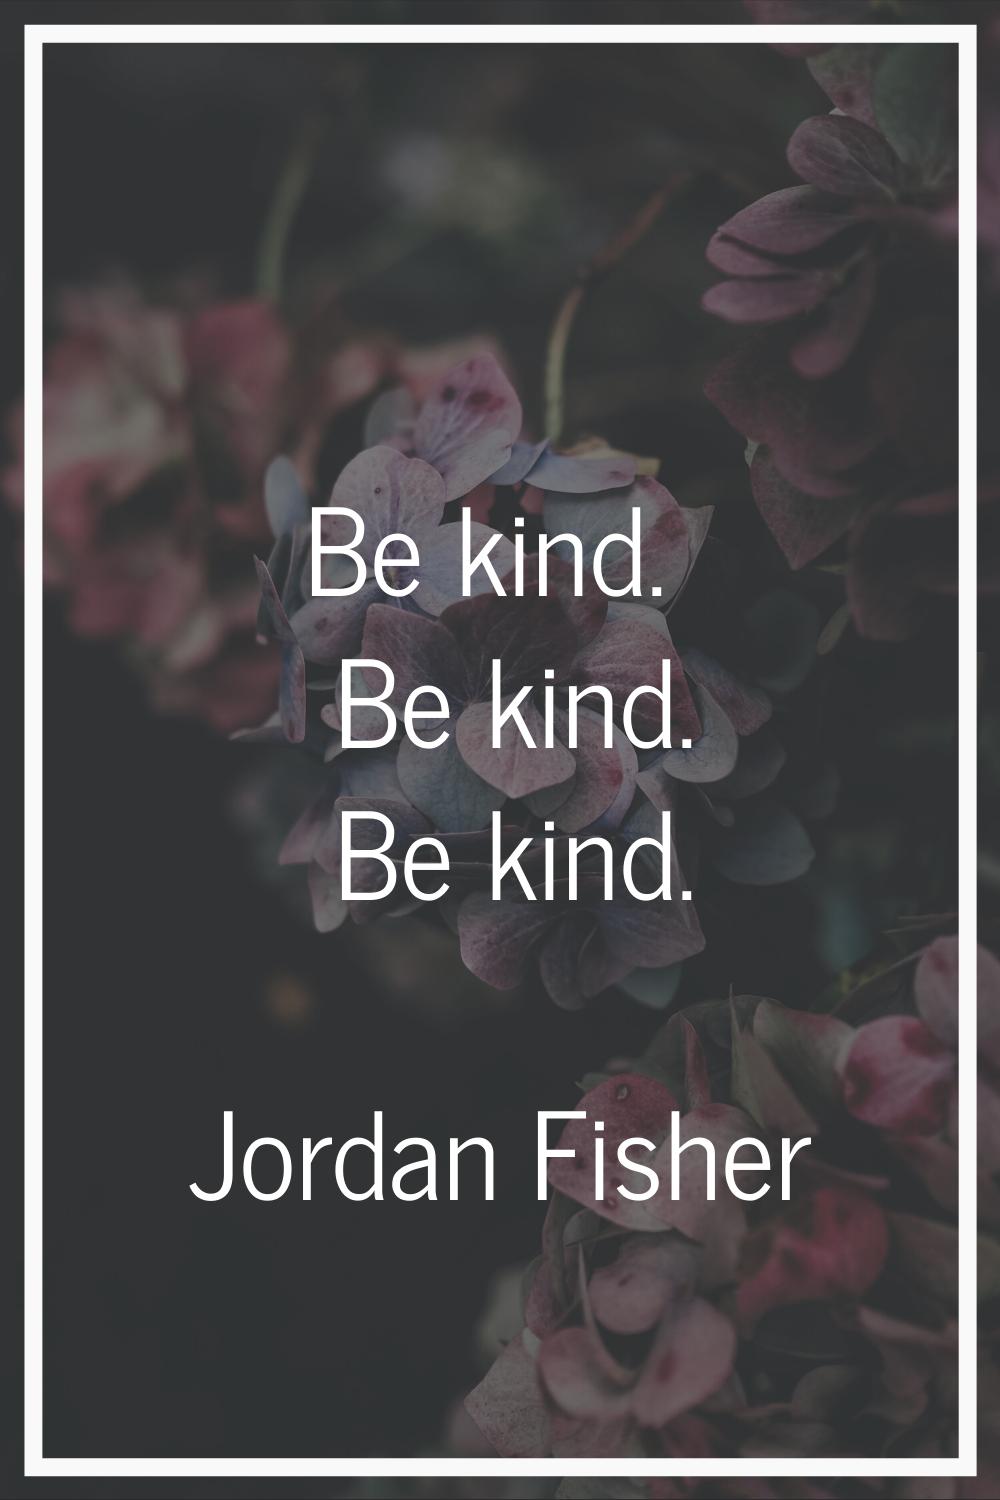 Be kind. Be kind. Be kind.